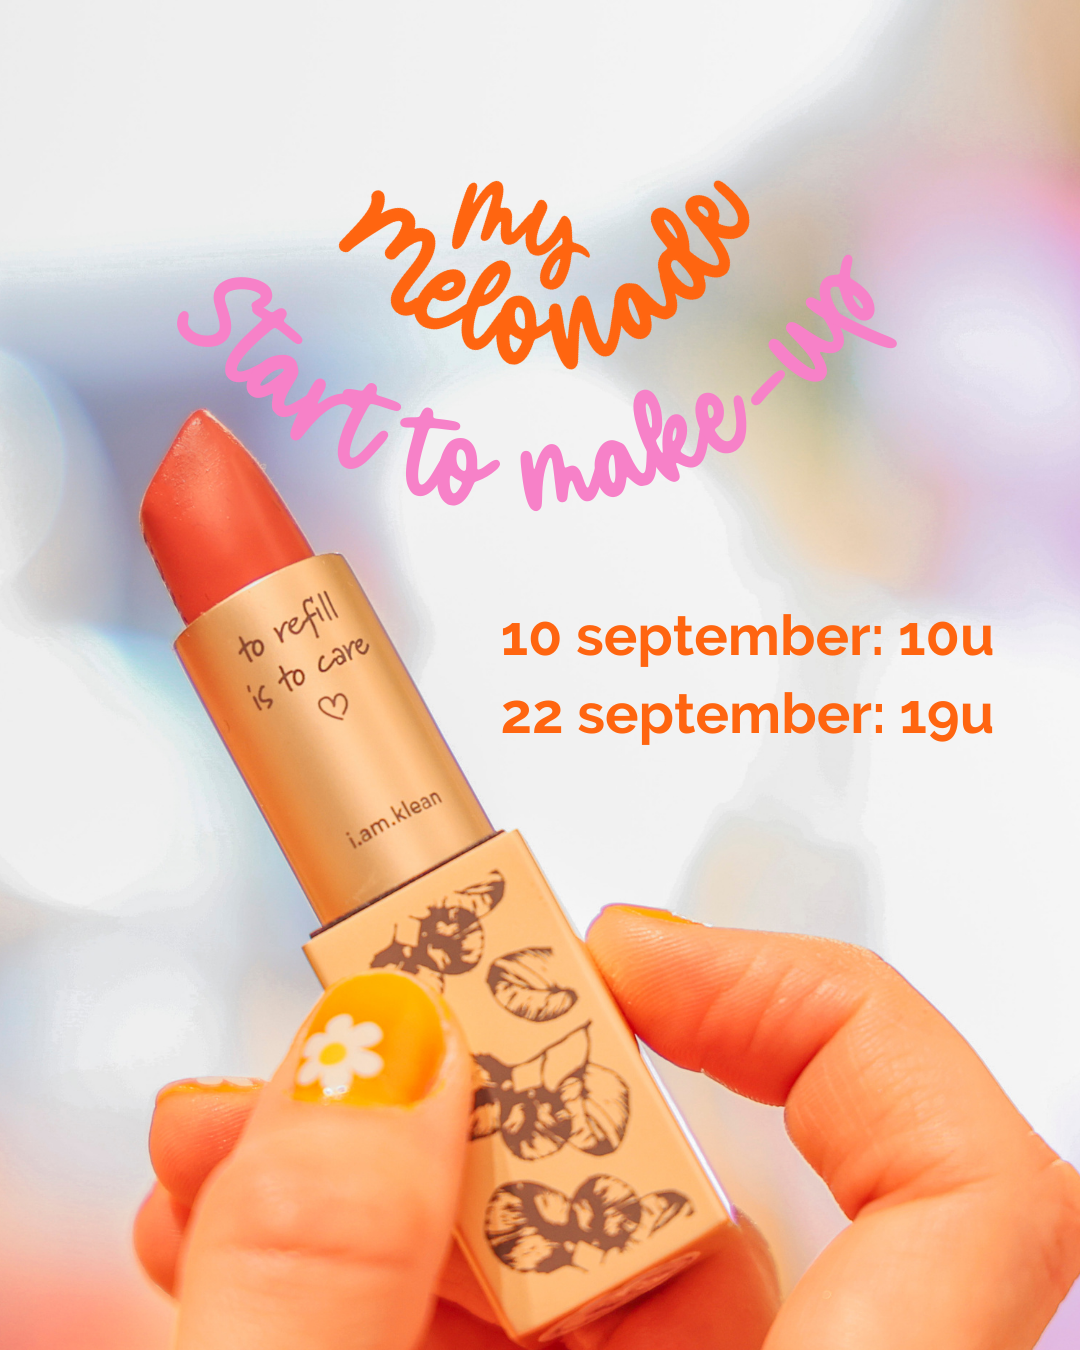 Start to make-up - September